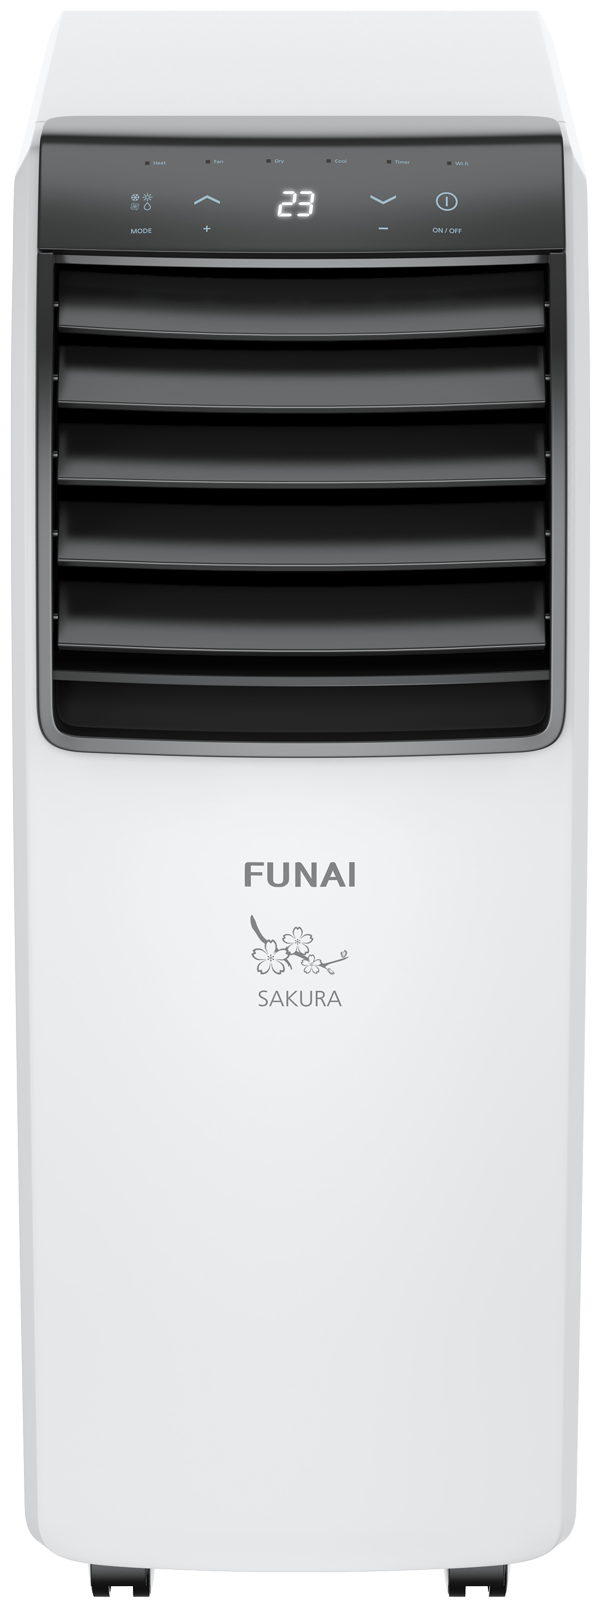 Мобильный кондиционер мощностью 25 м<sup>2</sup> - 2.6 кВт Funai - фото №2